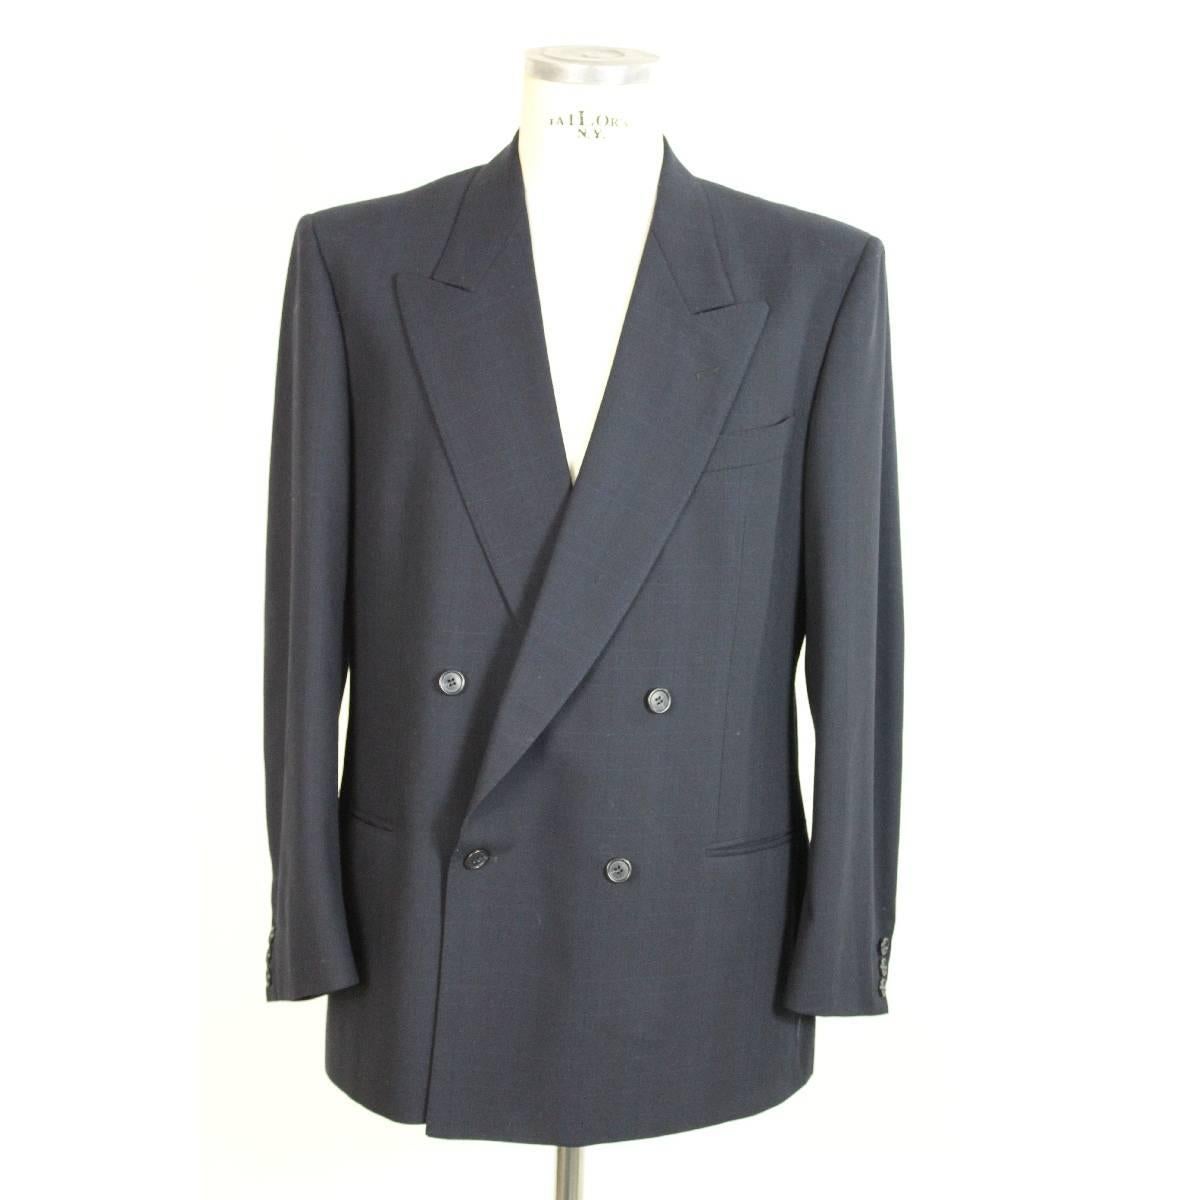 Valentino vintage men's suit, blue pinstripe wool jacket and pants, double breasted jacket, excellent conditions.

Size 52 (It); 42 US; 42 UK

Shoulder: 52 cm.
Armpit to armpit: 56 cm.
Sleeve: 62 cm.
Length: 82 cm.
Pants waist: 46 cm
Pants length: